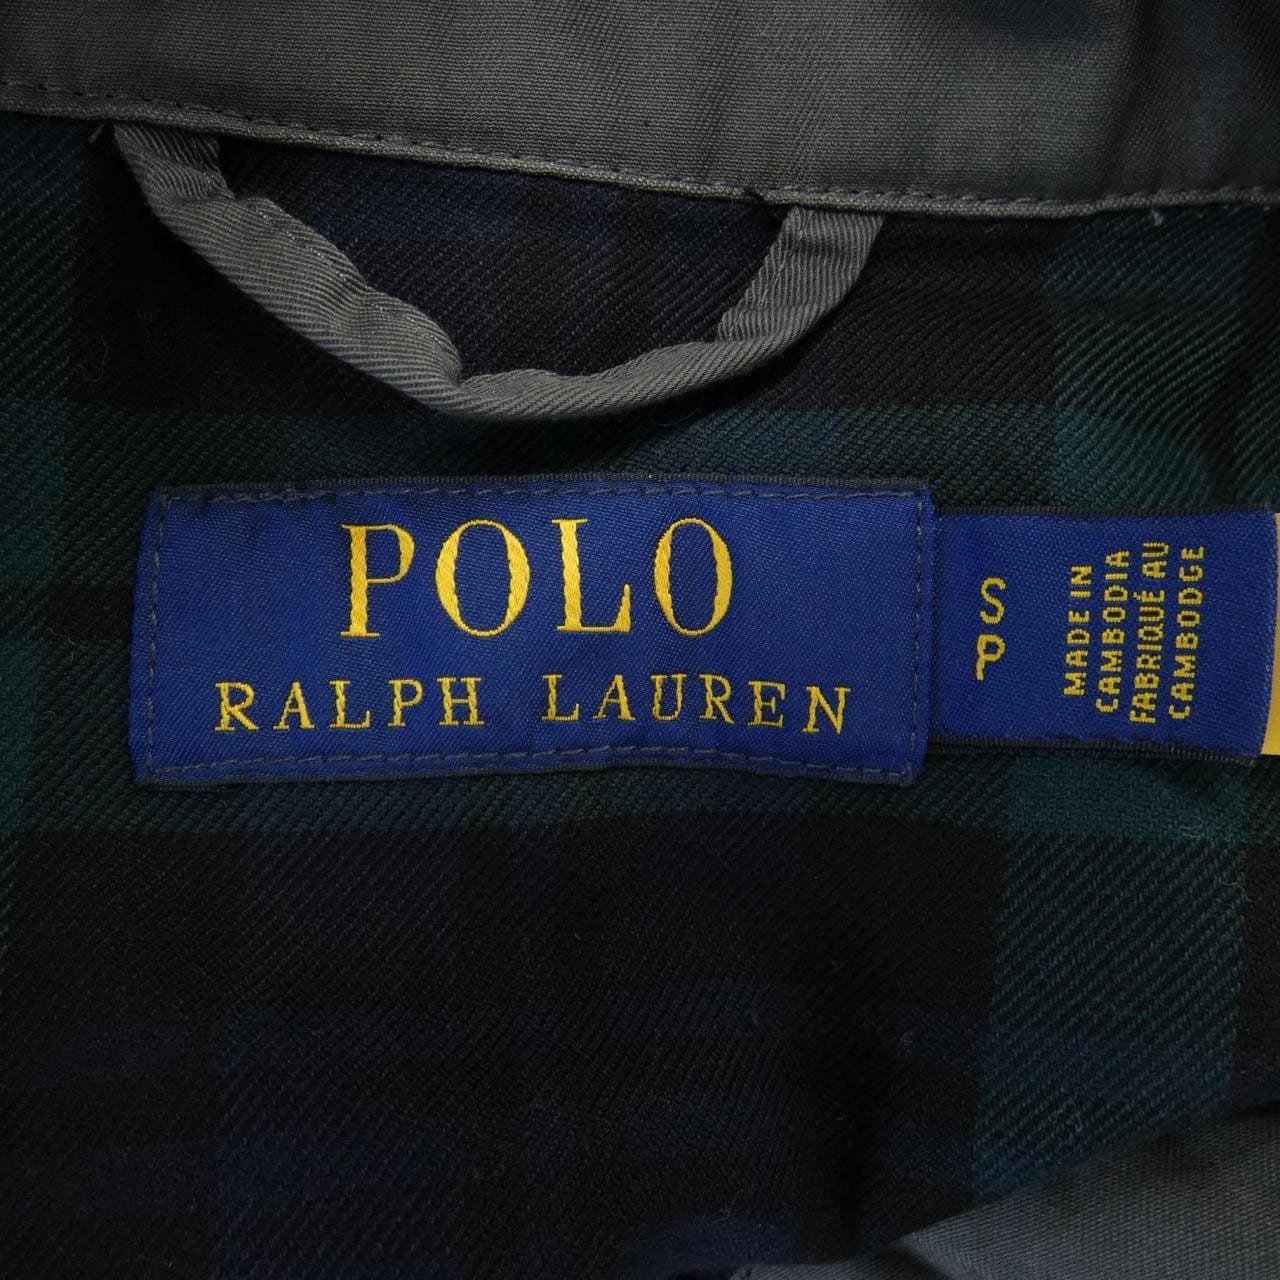 POLO POLO RALPH LAUREN夾克衫